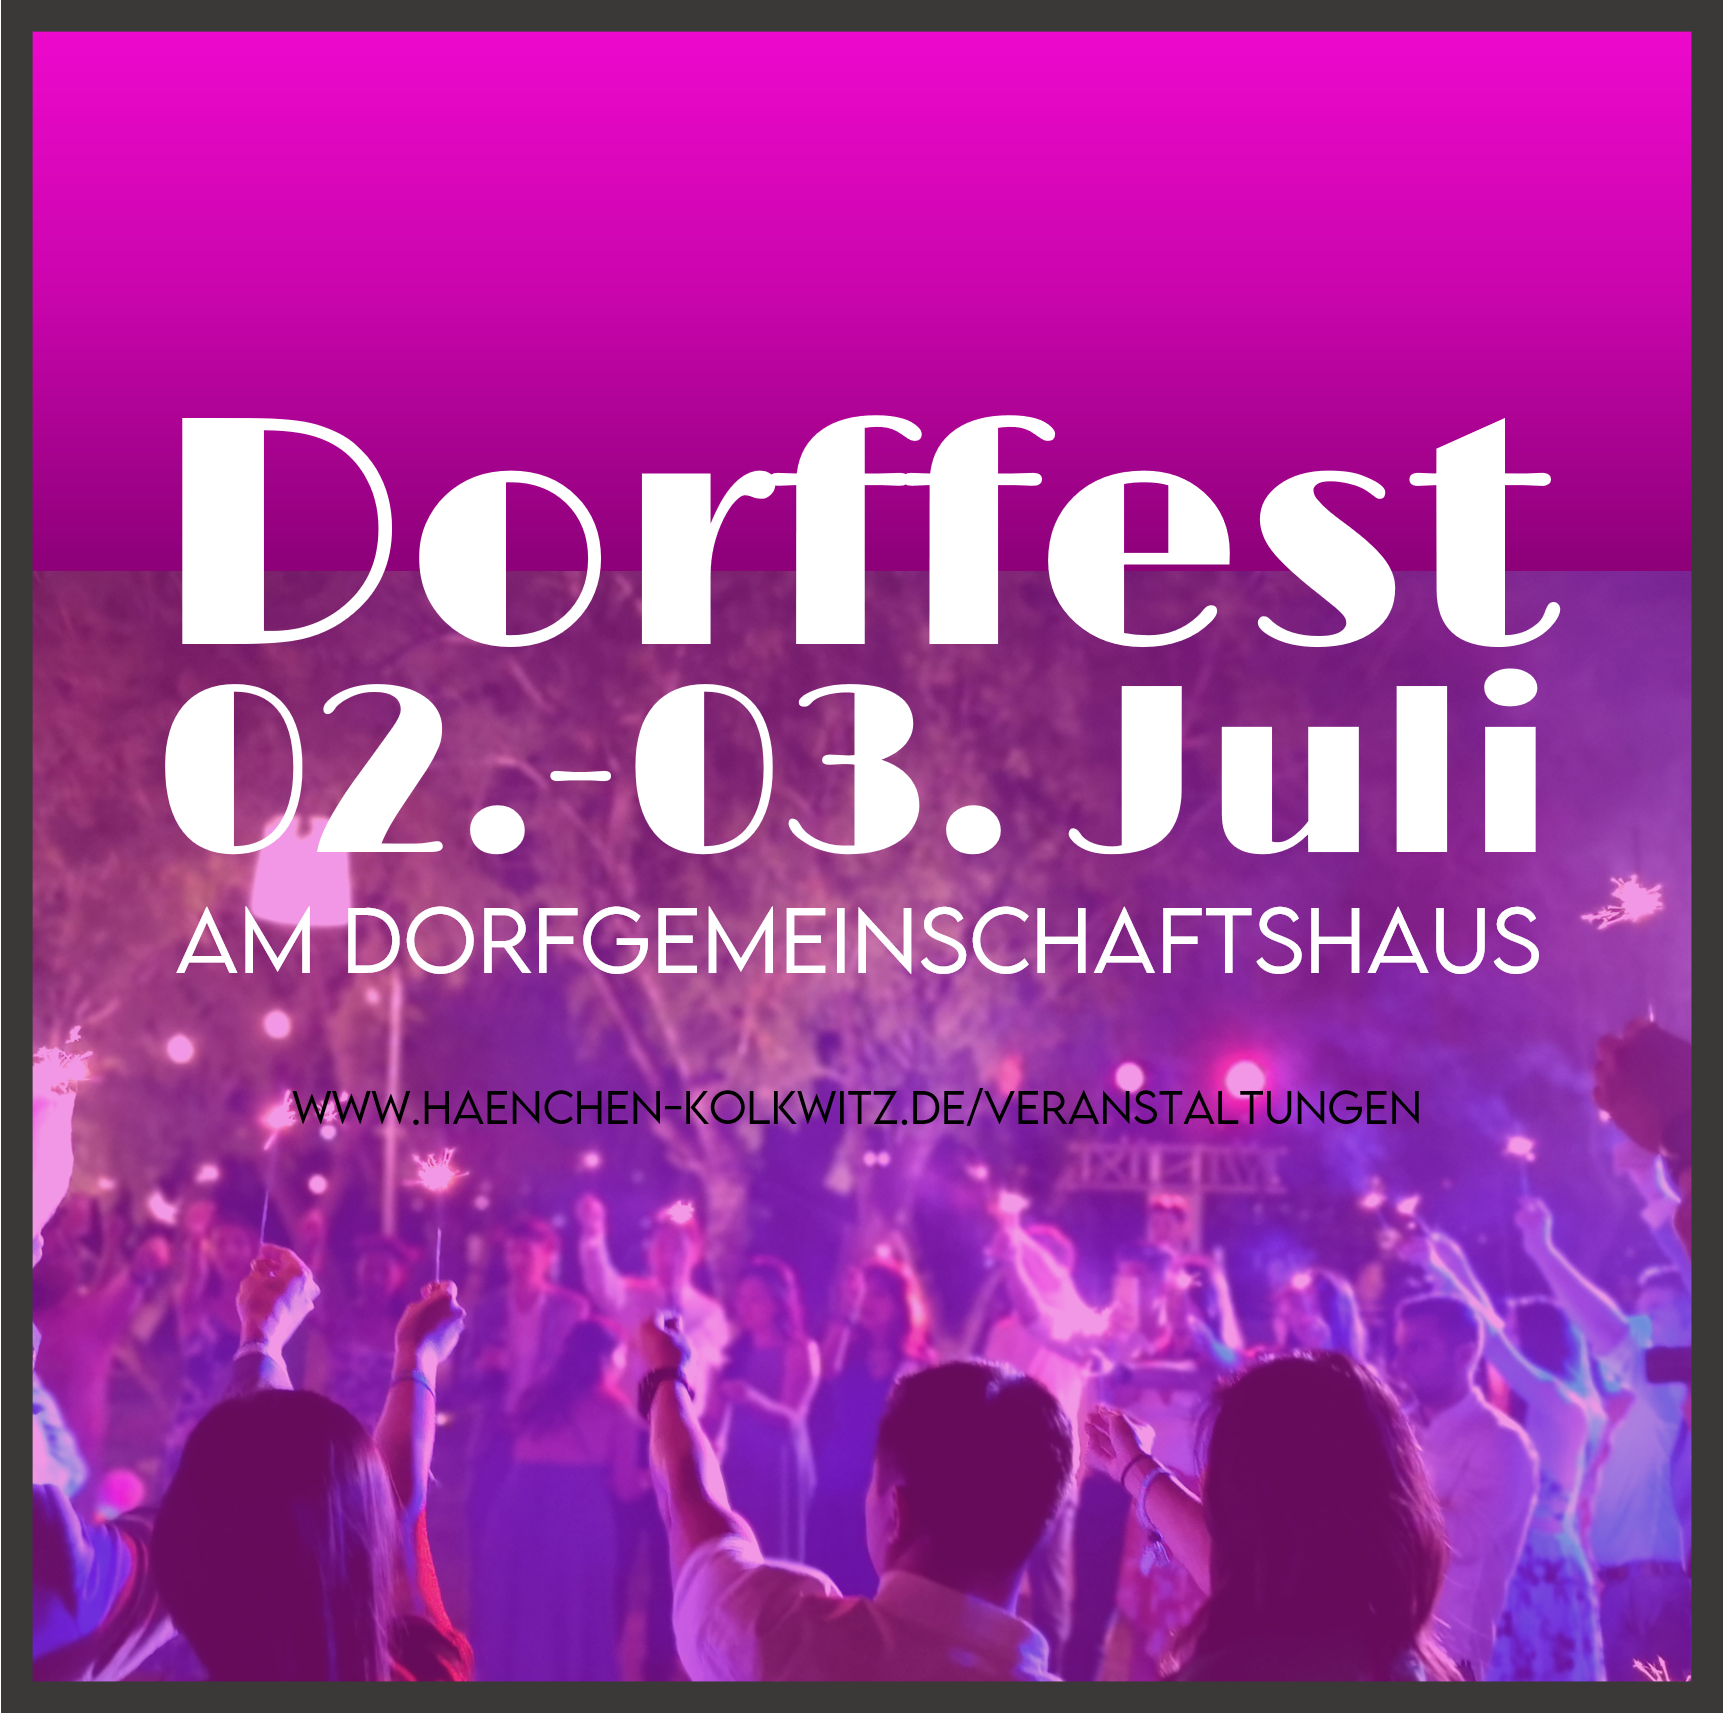 Dorffest 02.-03. Juli